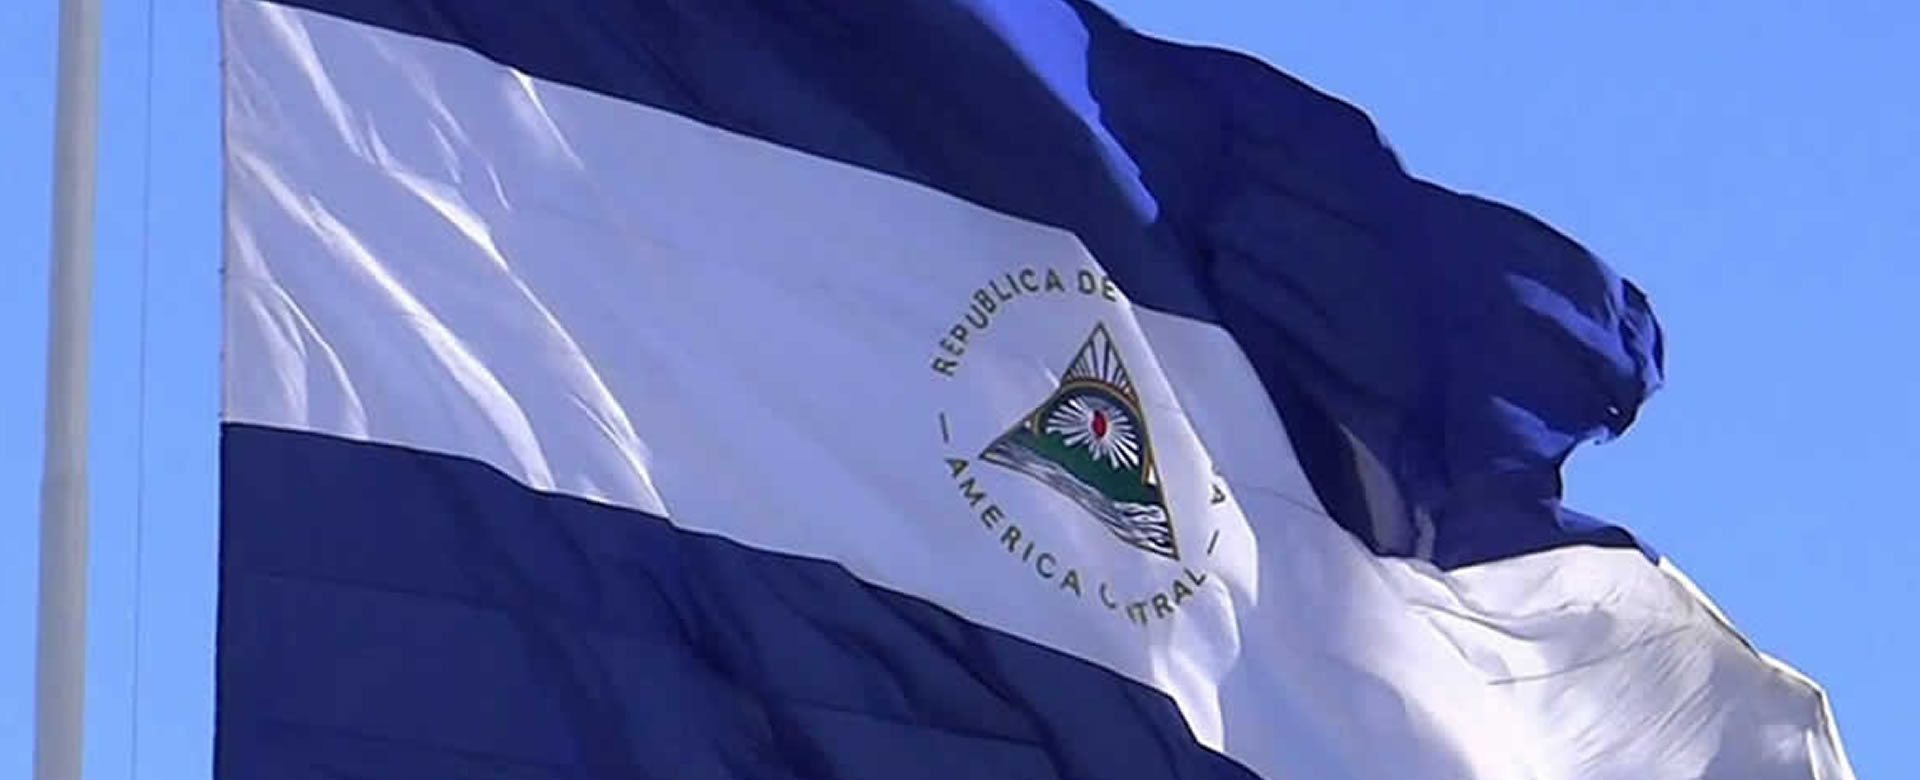 Nicaragua nuevos embajadores angola